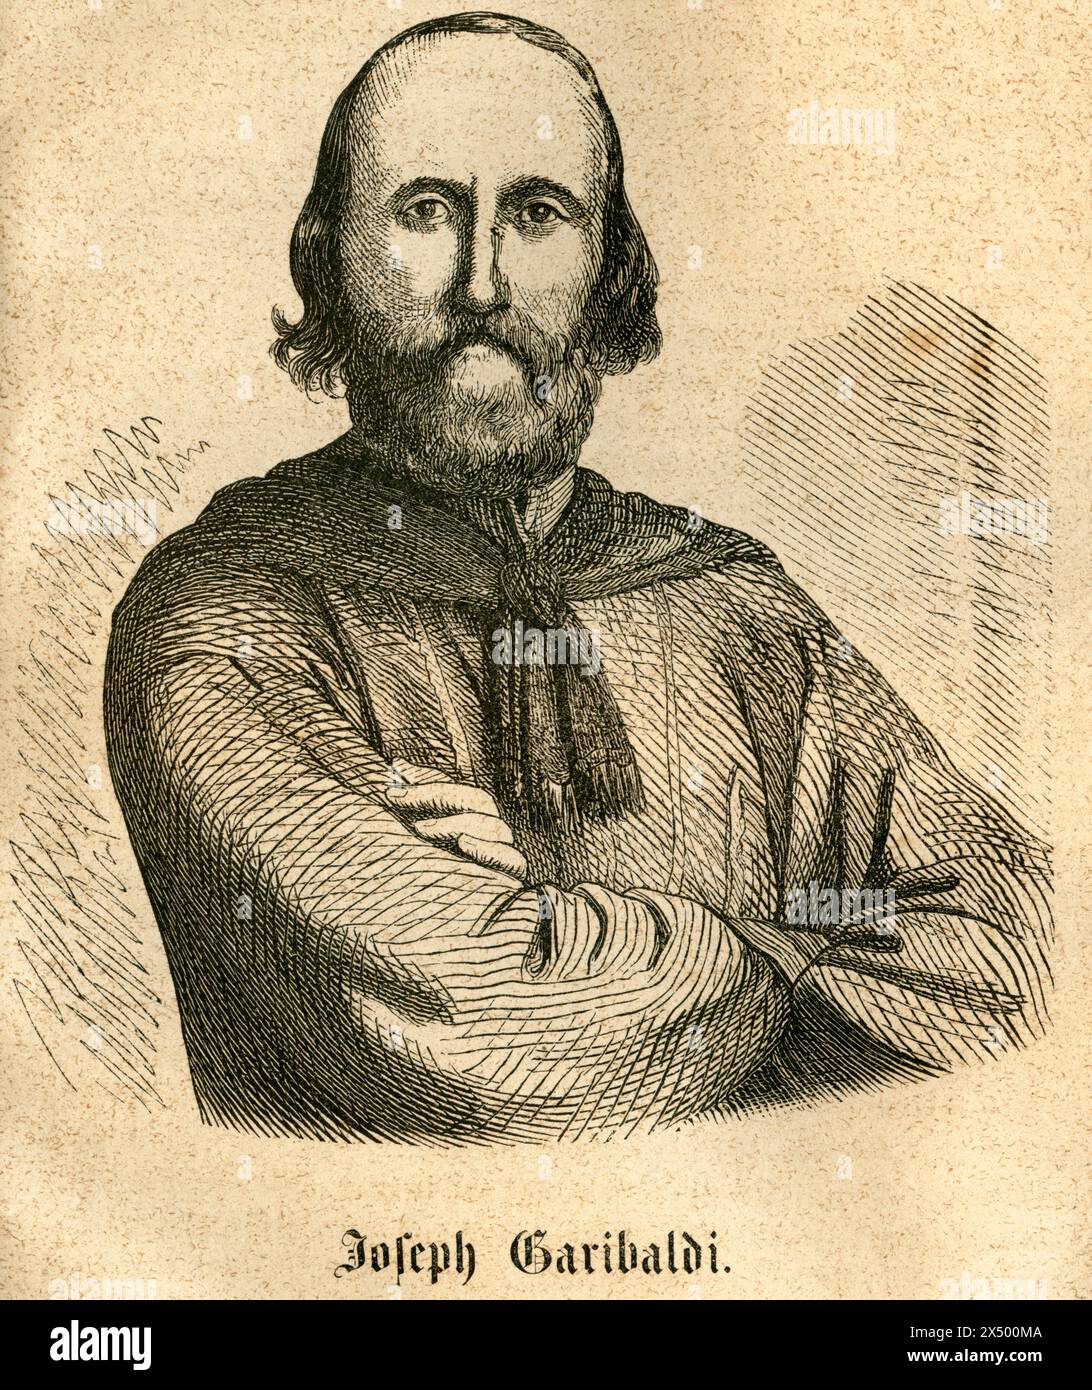 Giuseppe Garibaldi, combattant italien de la liberté, LES DROITS D'AUTEUR DE L'ARTISTE NE DOIVENT PAS ÊTRE EFFACÉS Banque D'Images